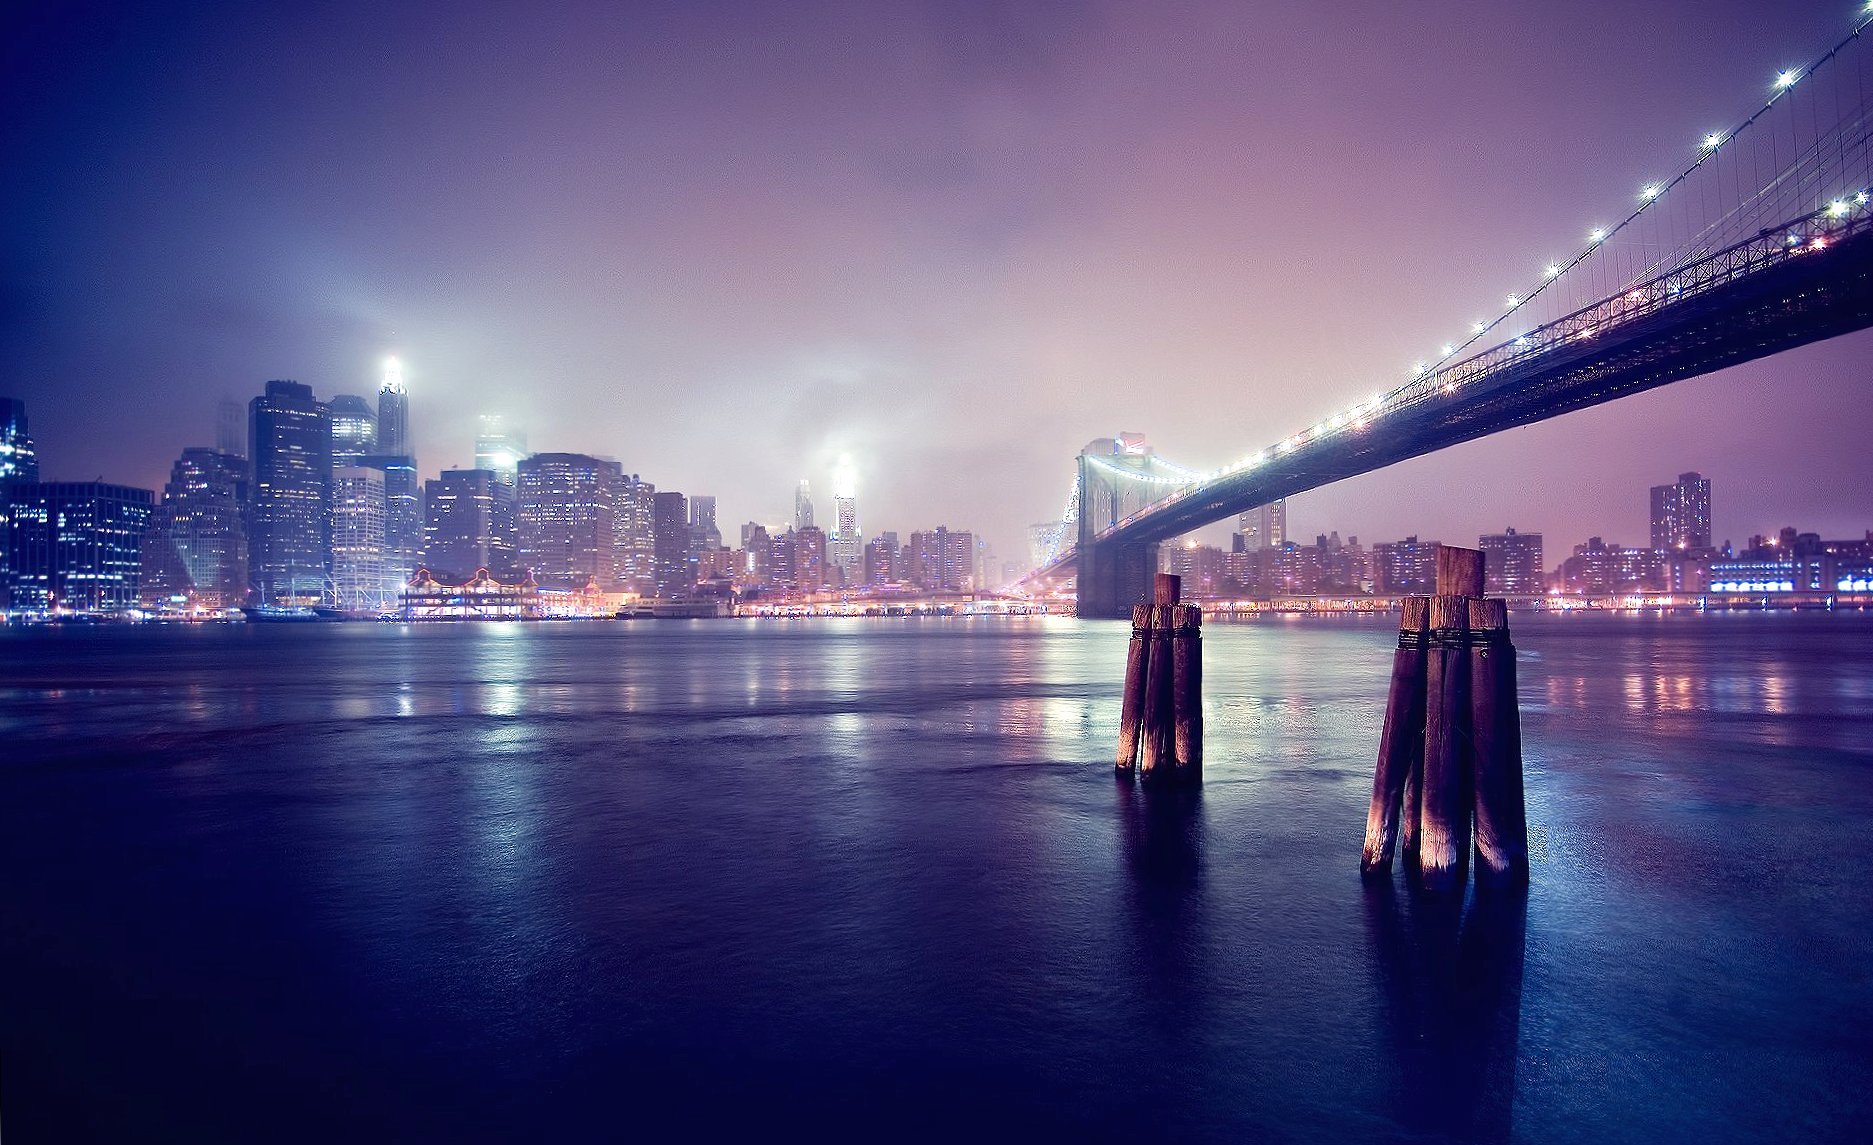 Night brooklyn bridge new york at 1024 x 1024 iPad size wallpapers HD quality